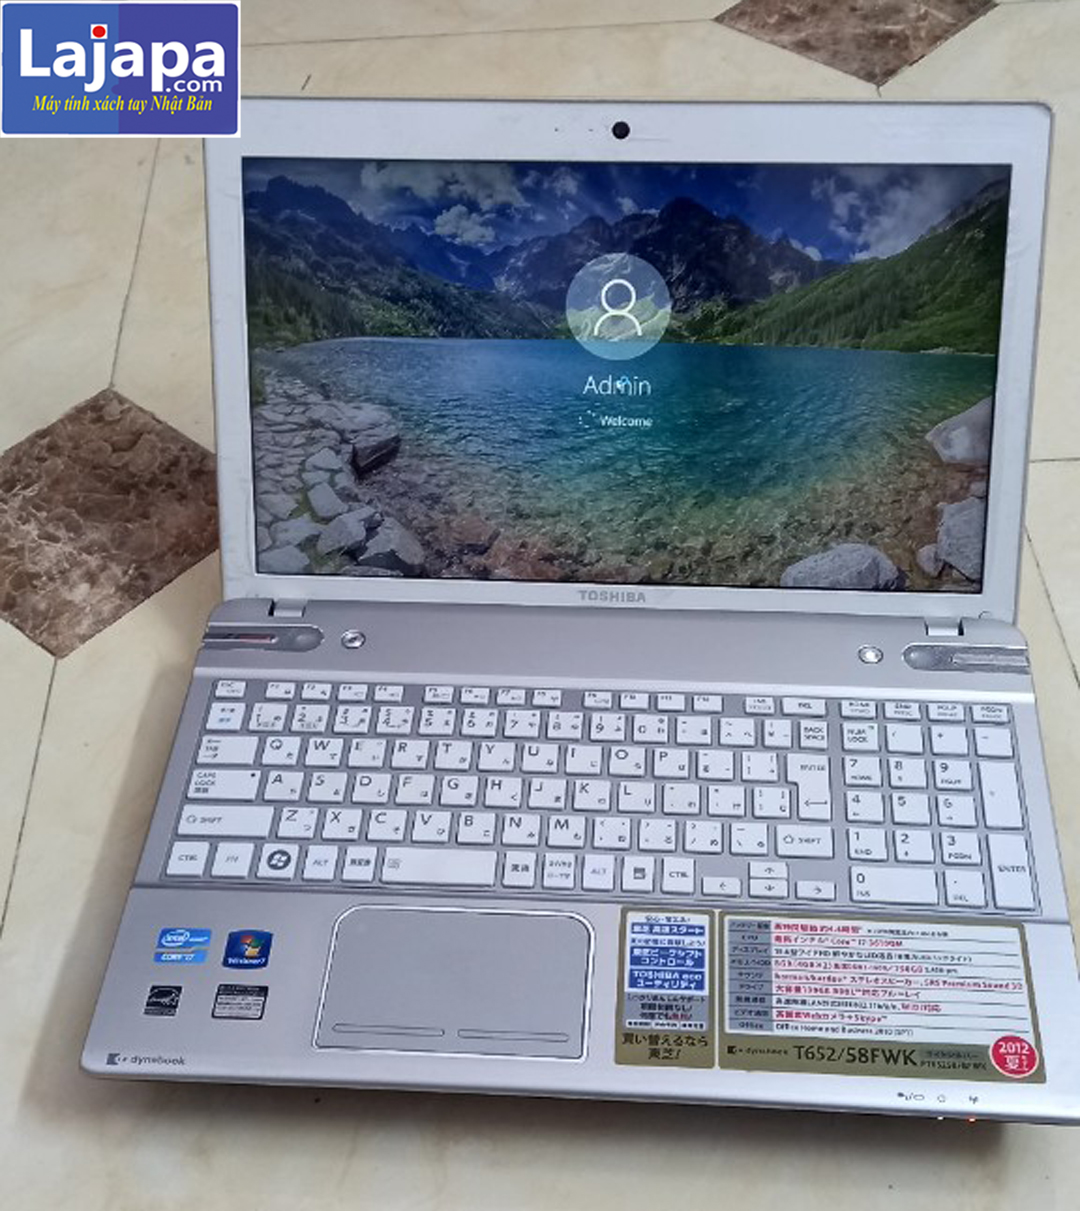 【TOSHIBA】Satellite P850/ P750 (dynabook T552) Corel i5-3210M, hoặc i7-2630QM /i7-3610QM LAJAPA Máy tính xách tay Nhật Laptop Nhật Bản Siêu...